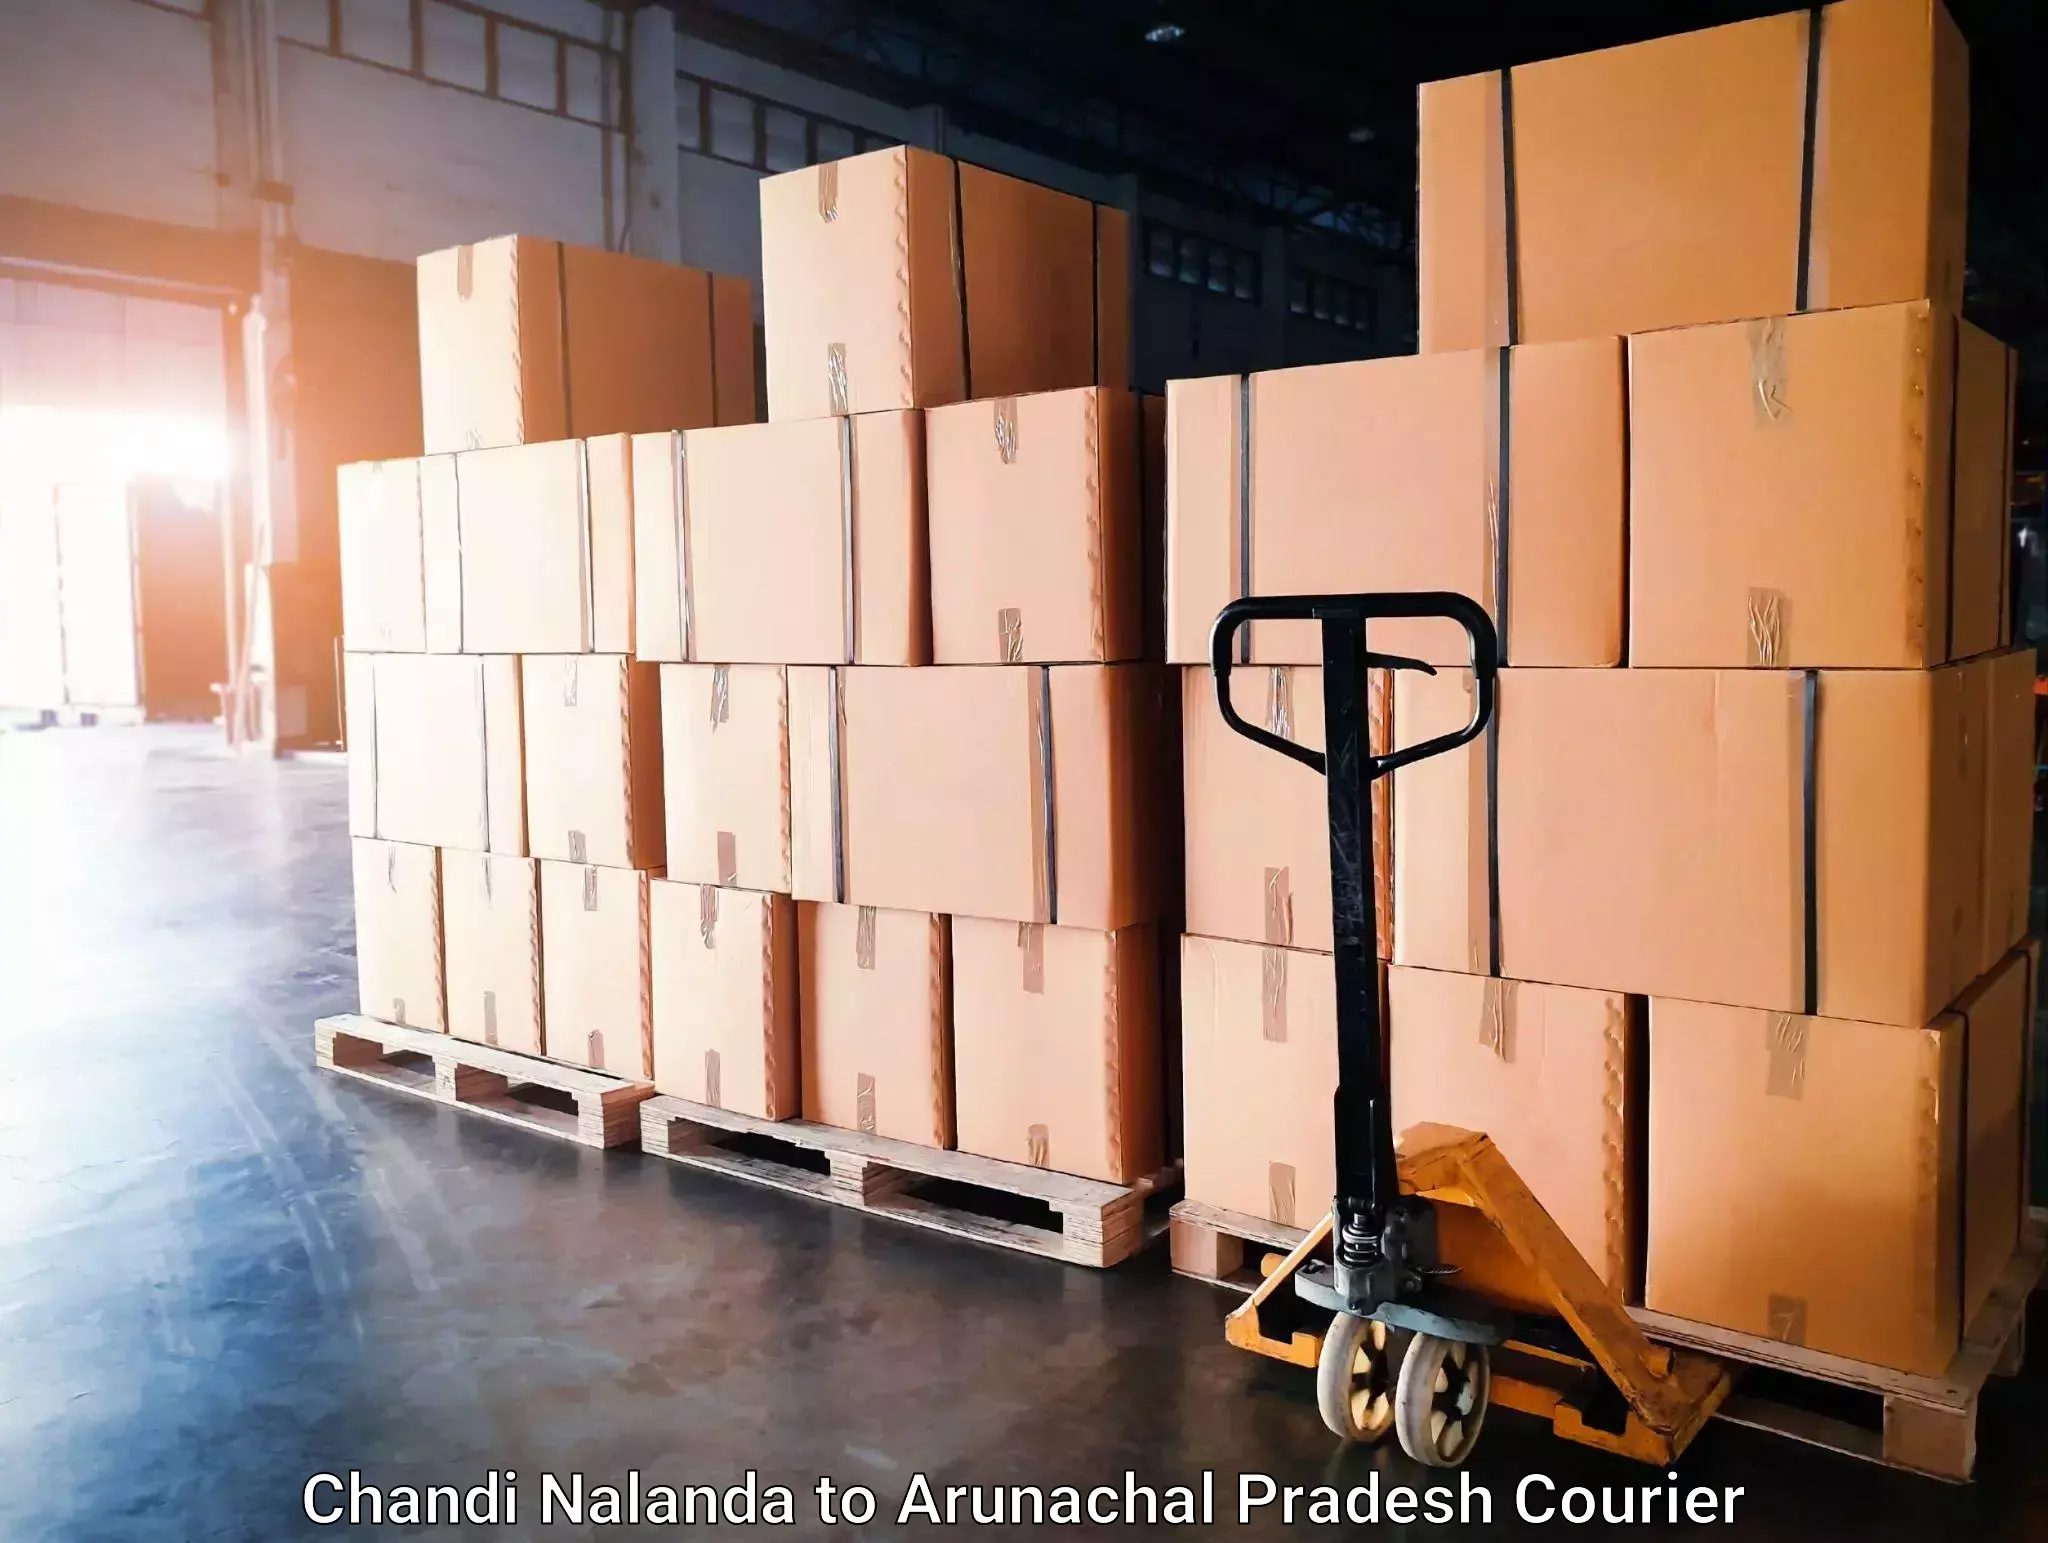 Hassle-free relocation Chandi Nalanda to Lohit